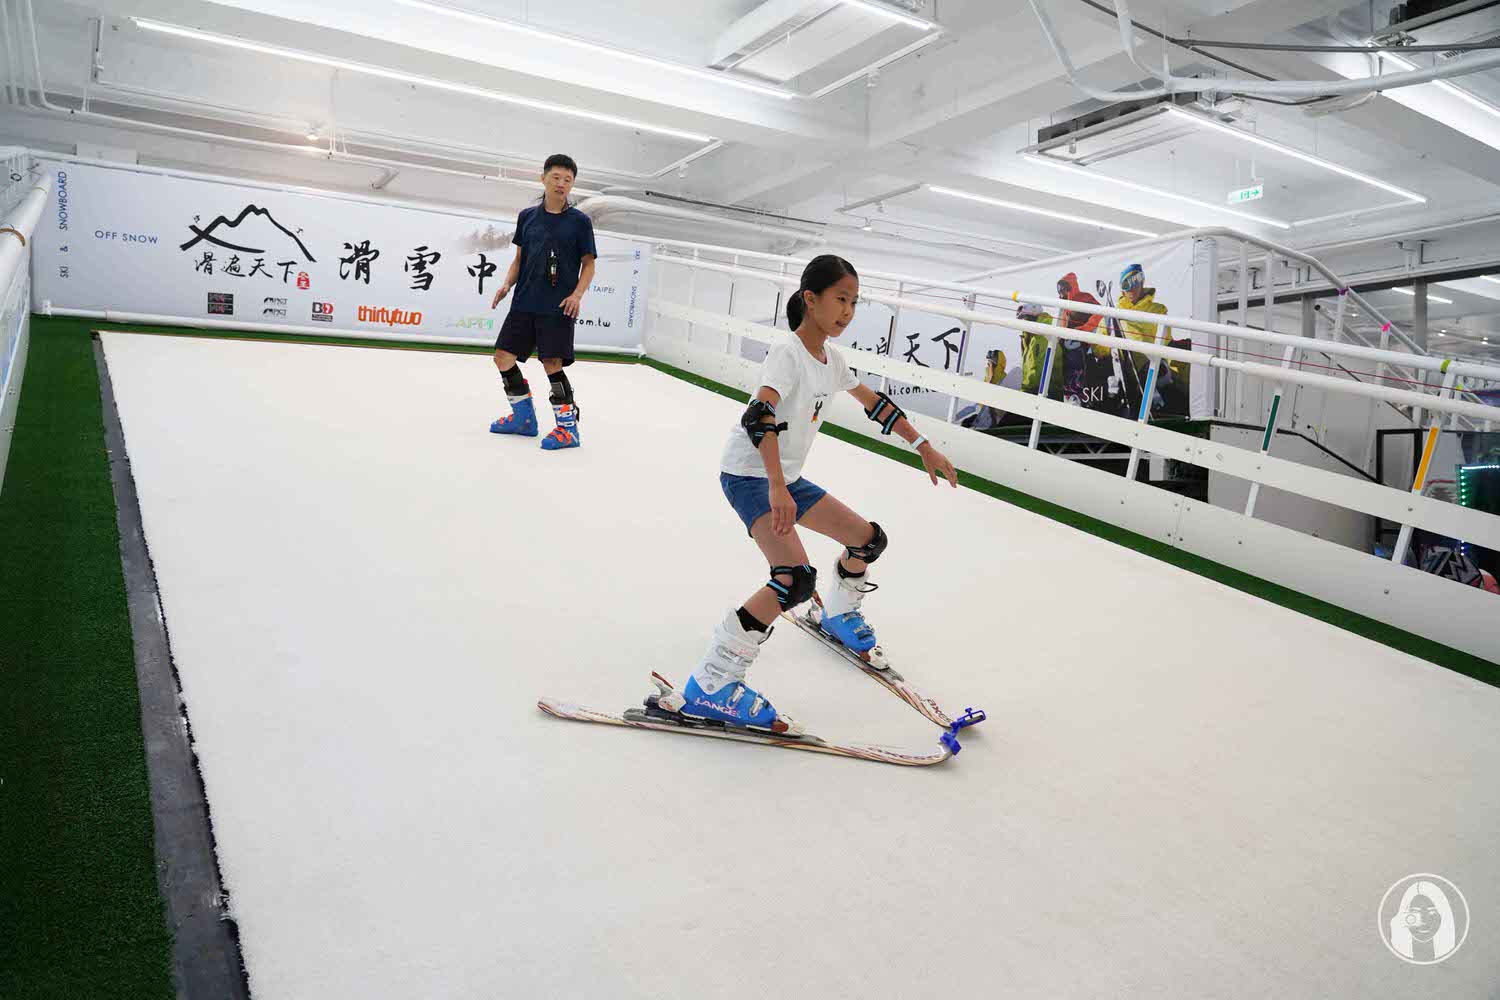 滑遍天下滑雪中心 兒童 SKI